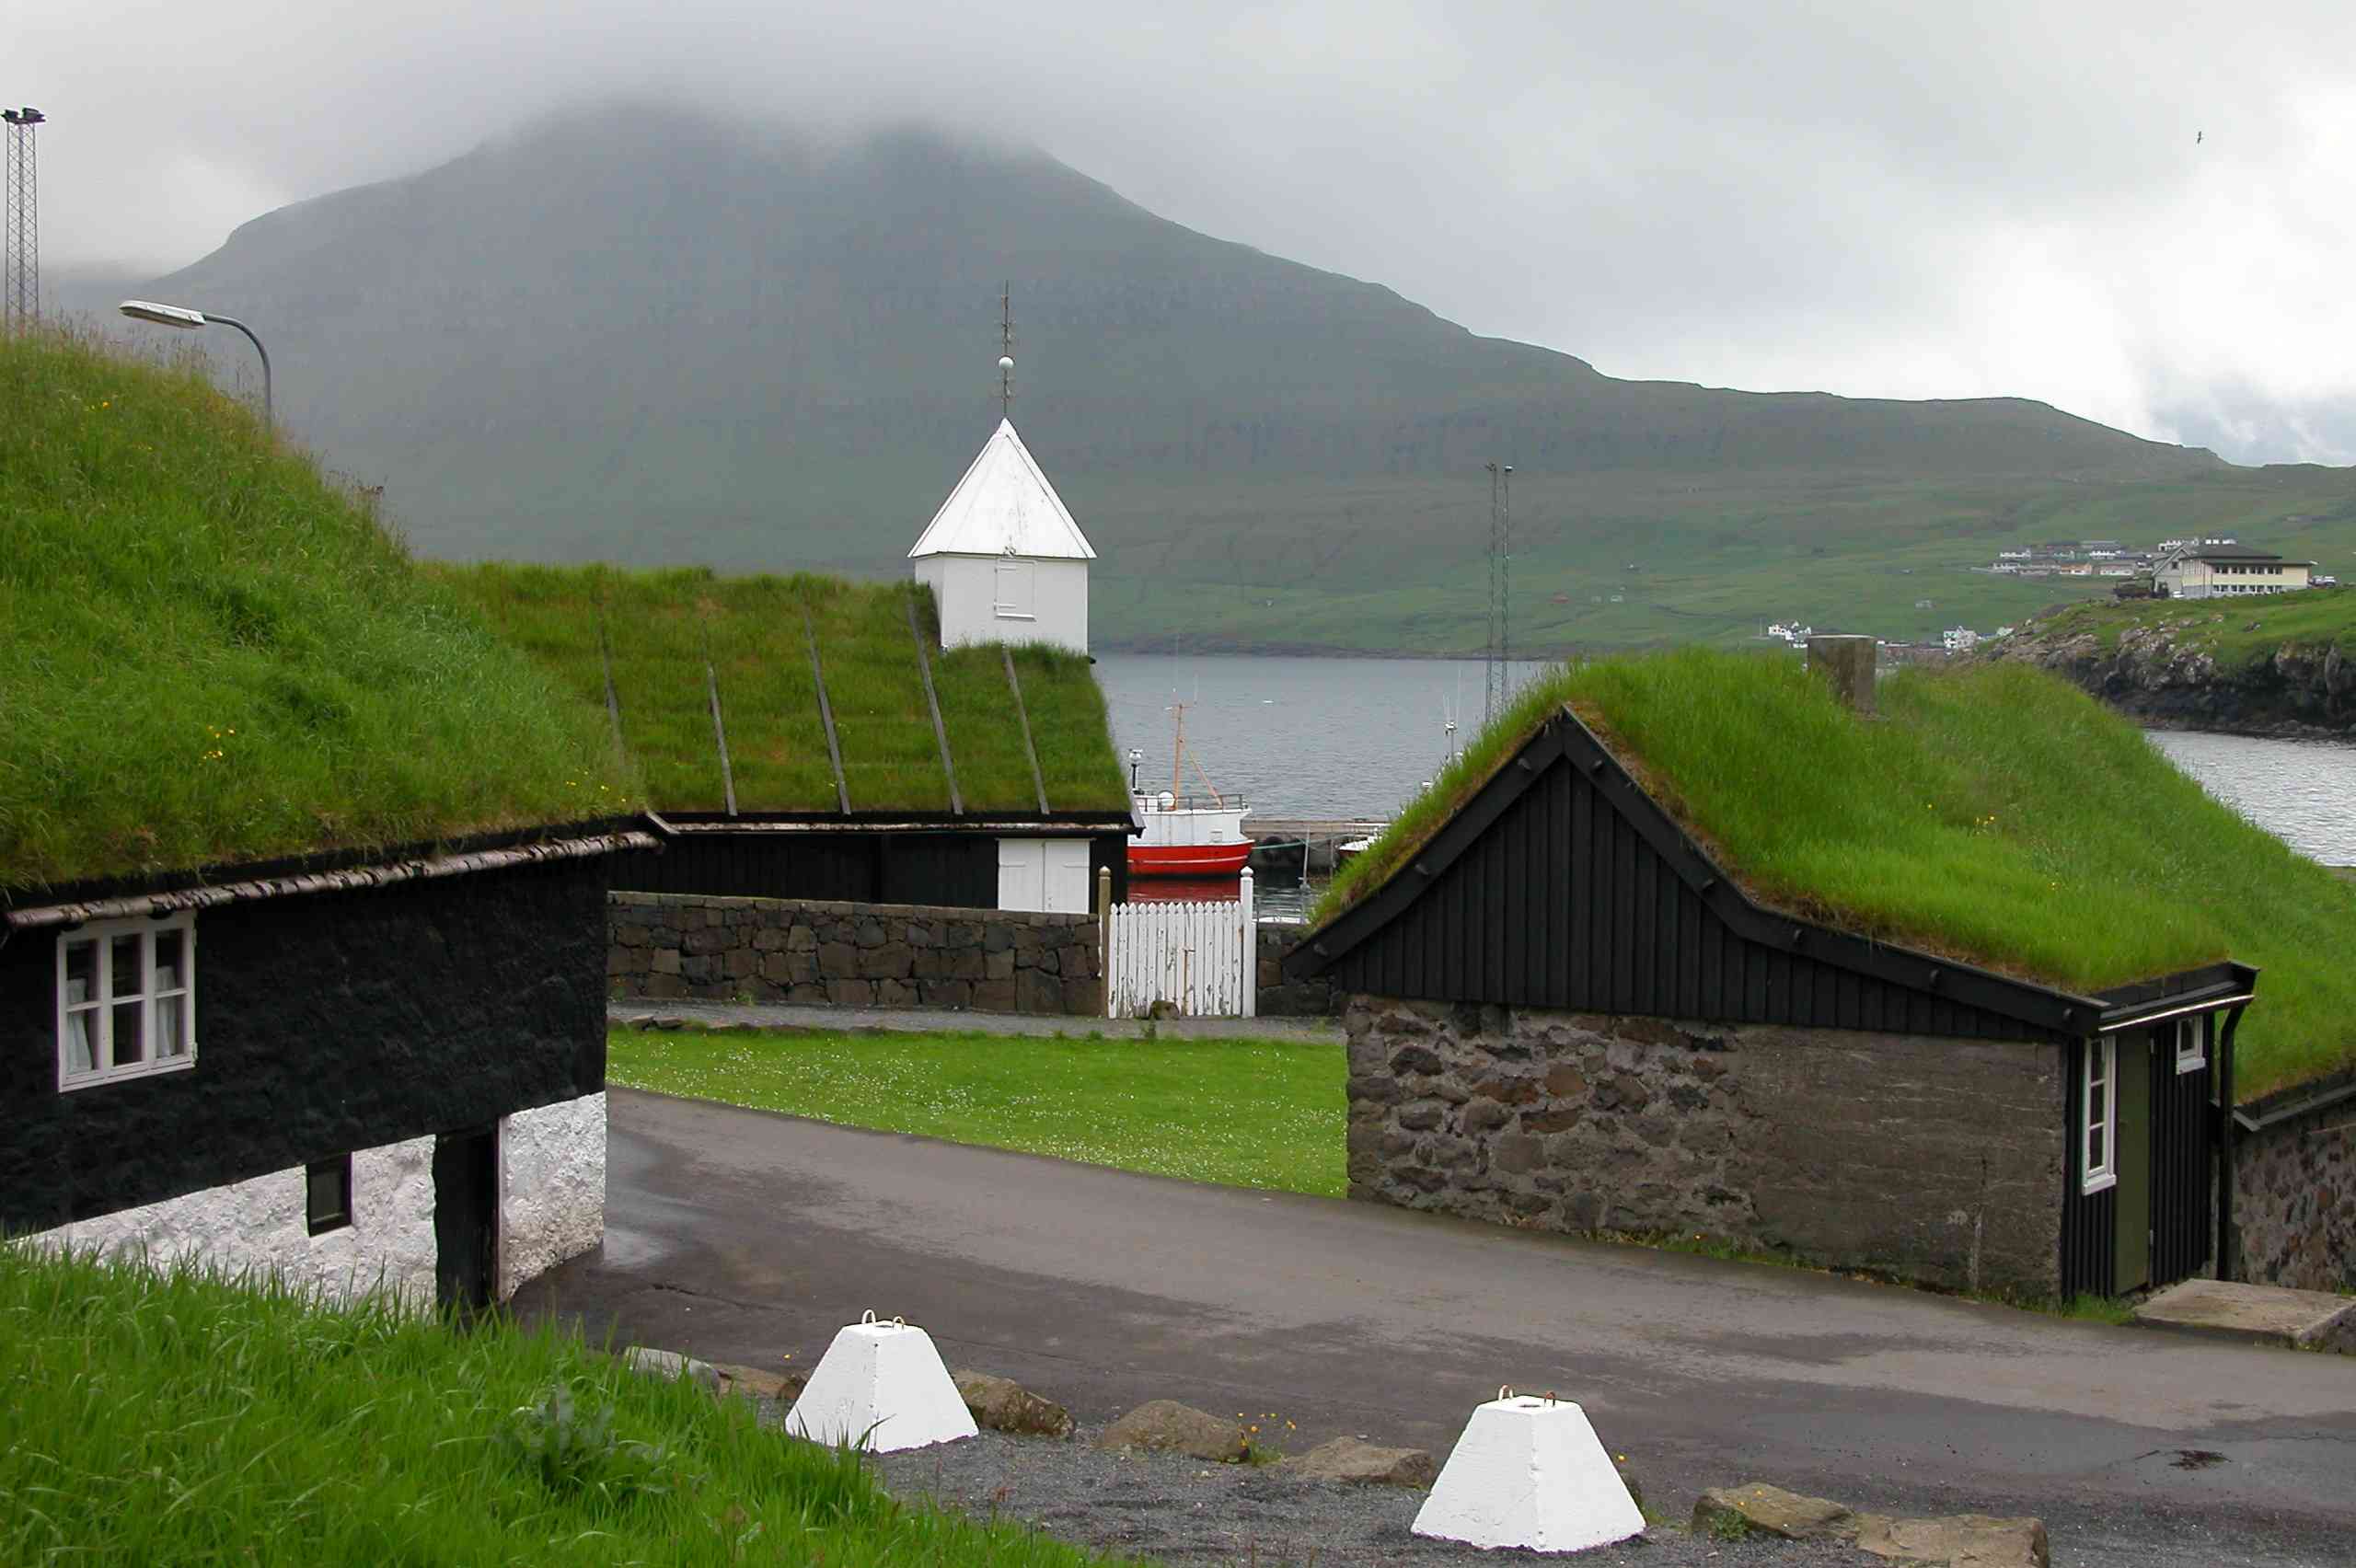 Edificios tradicionales con tejados verdes en Norðragøta en Eysturoy, Islas Feroe